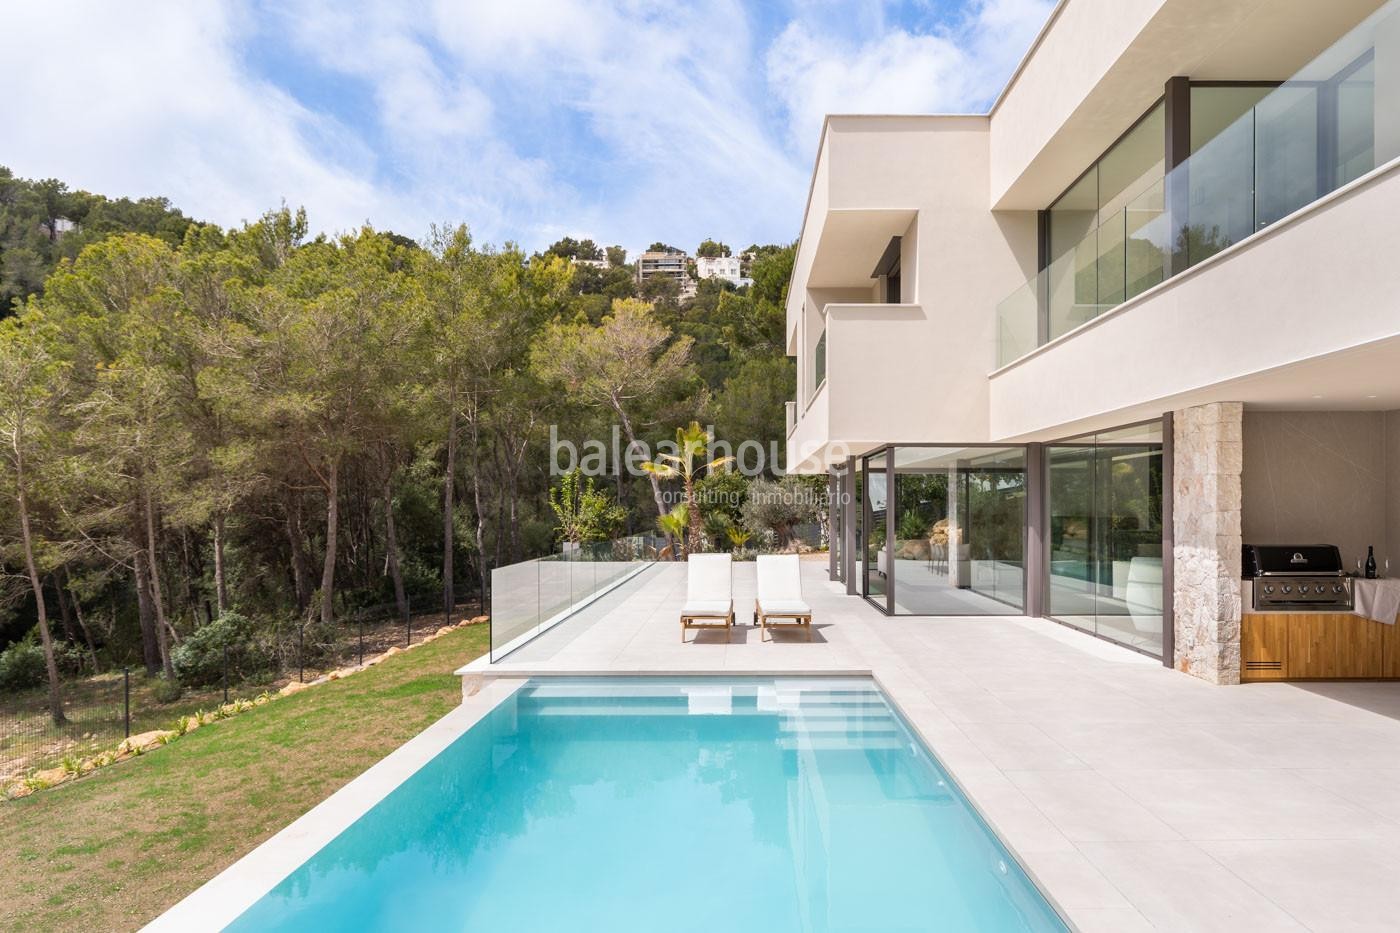 Spektakuläre neue moderne Villa mit schöner Aussicht in Costa den Blanes